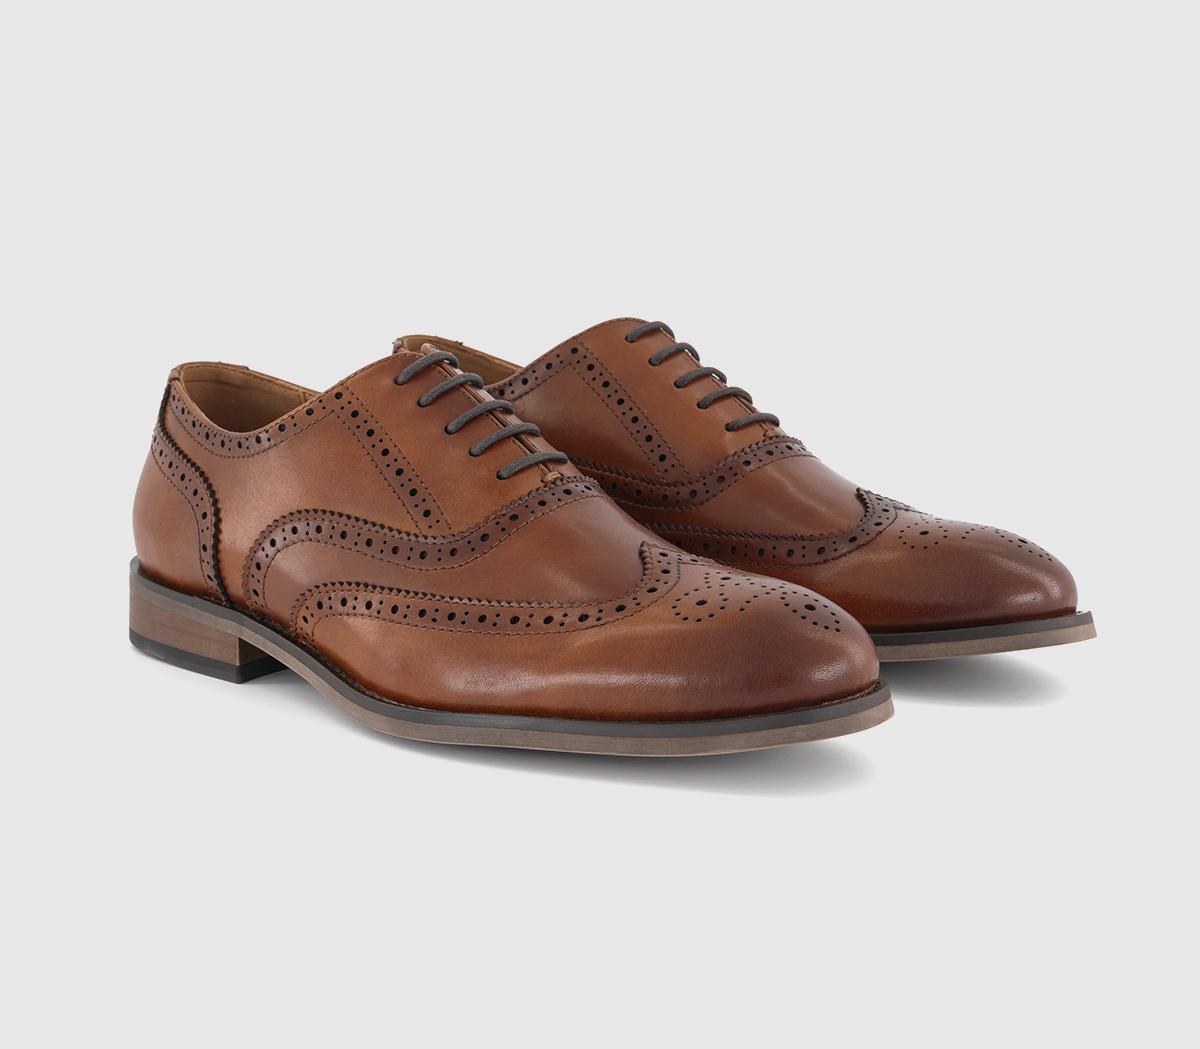 OFFICE Milton Oxford Brogue Shoes Tan Leather - Men’s Smart Shoes